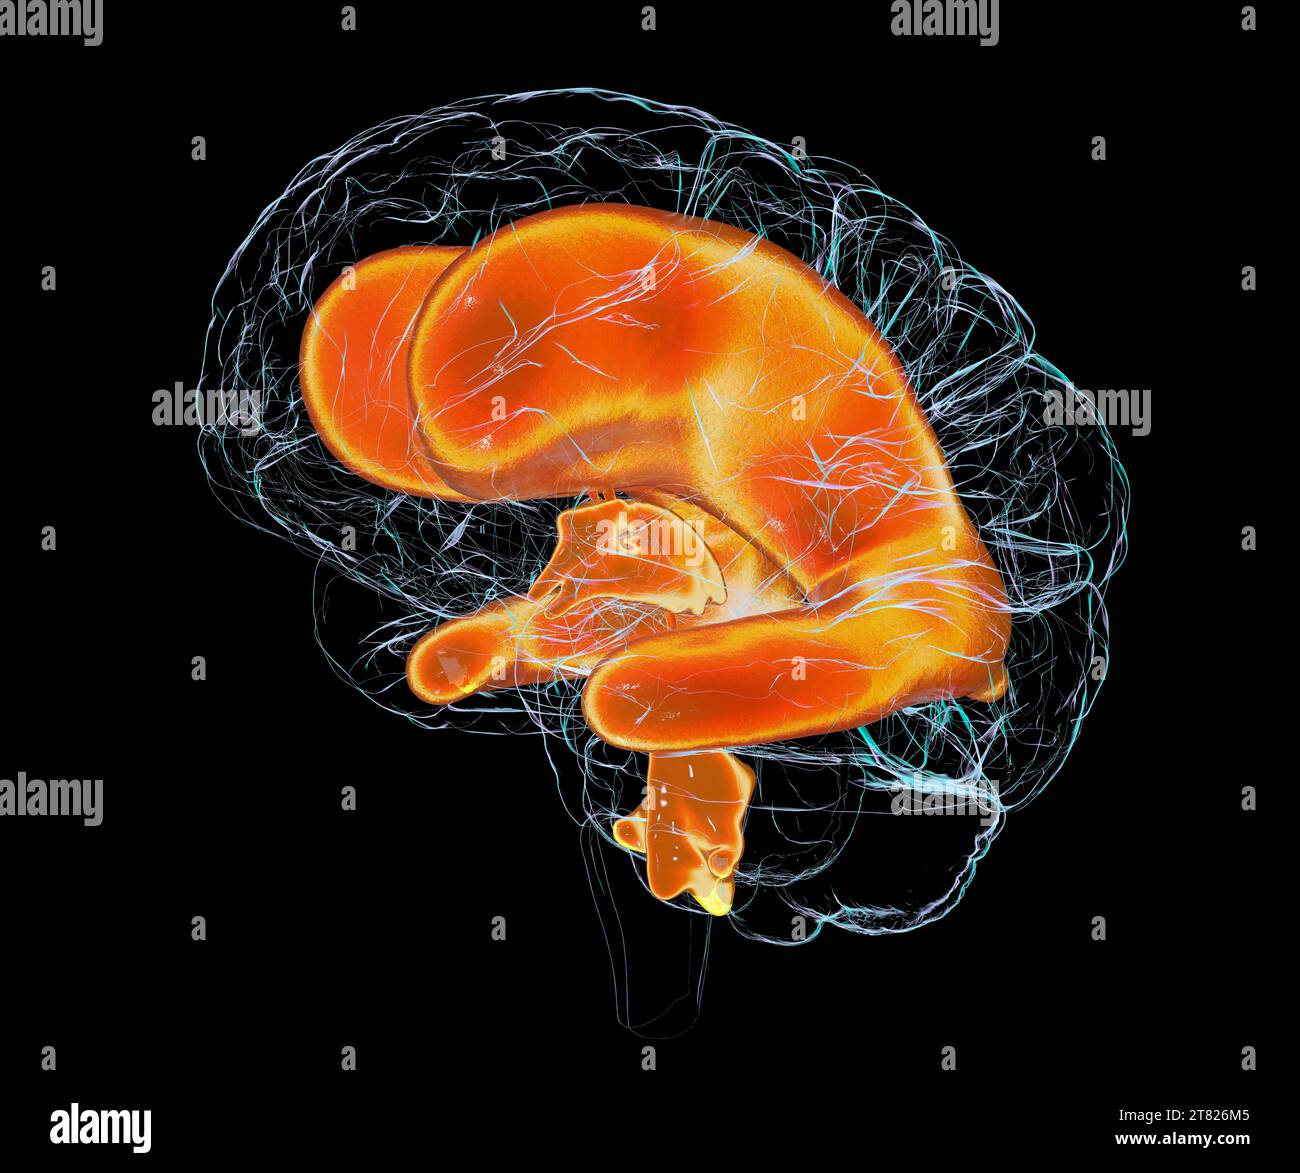 Vergrößerte Ventrikel des kindlichen Gehirns, Illustration Stockfoto